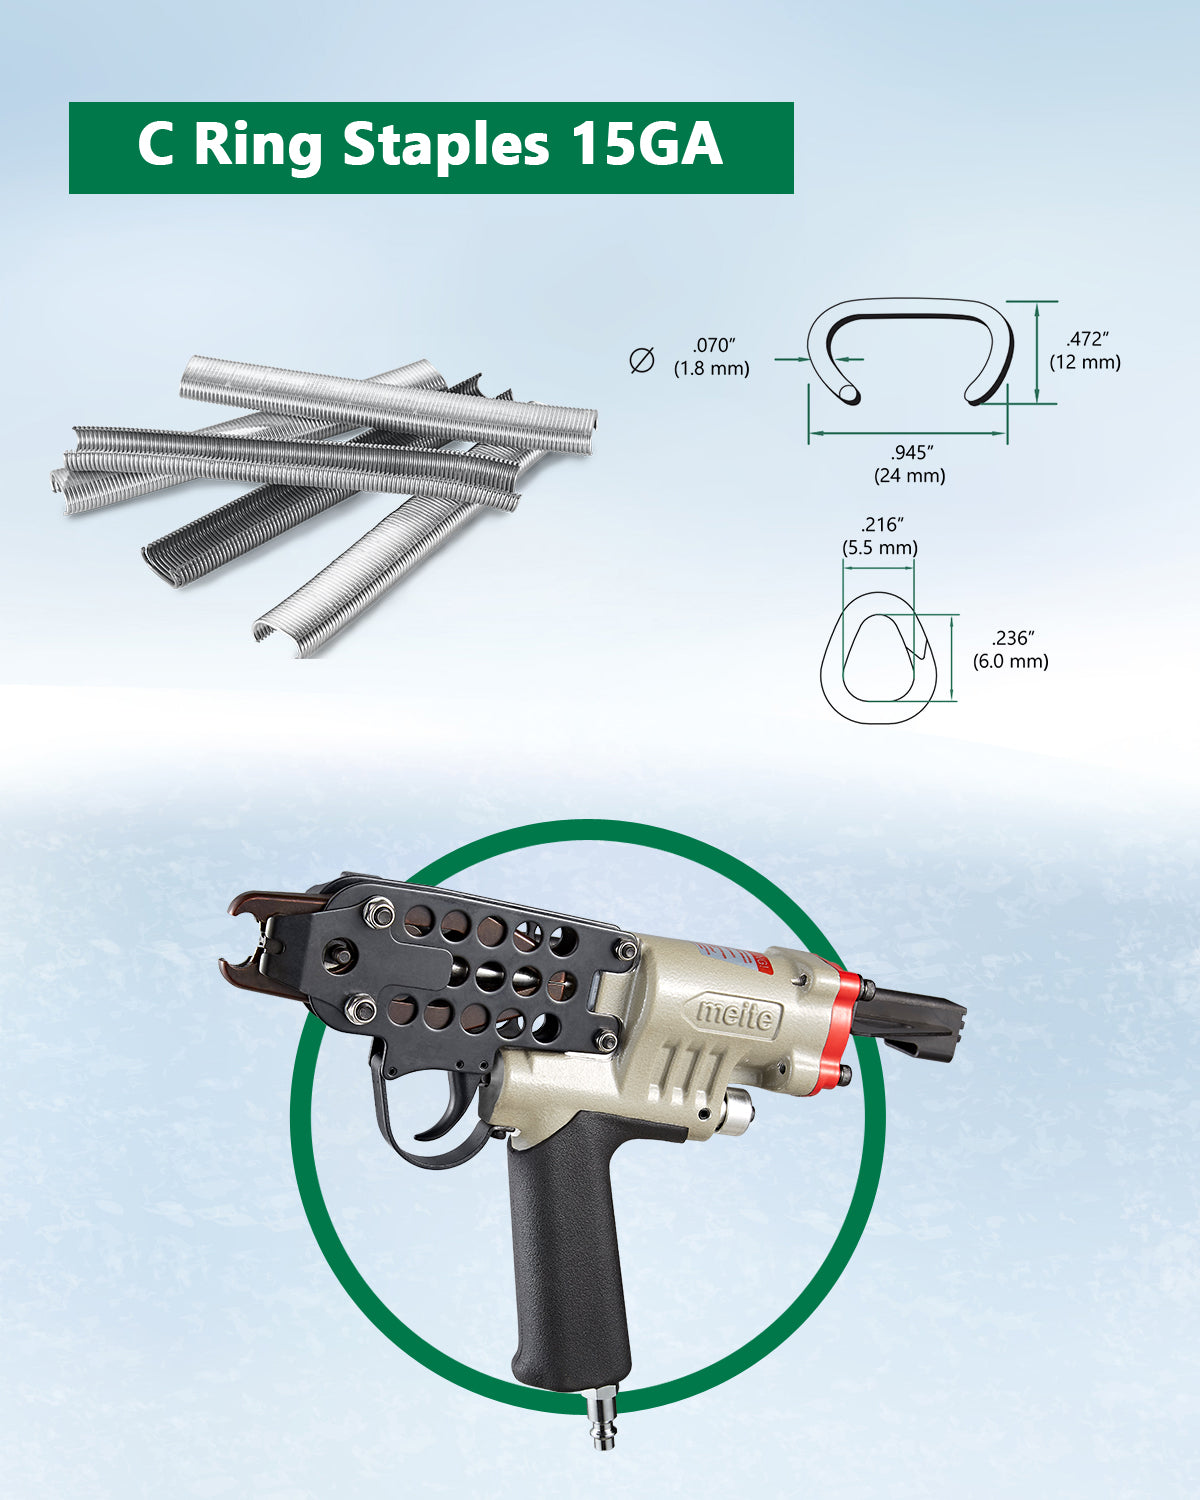 15 Gauge 3/4'' Hog Ring Tool - Updated Trigger Set, New Model SC7C-I2 - MEITE USA